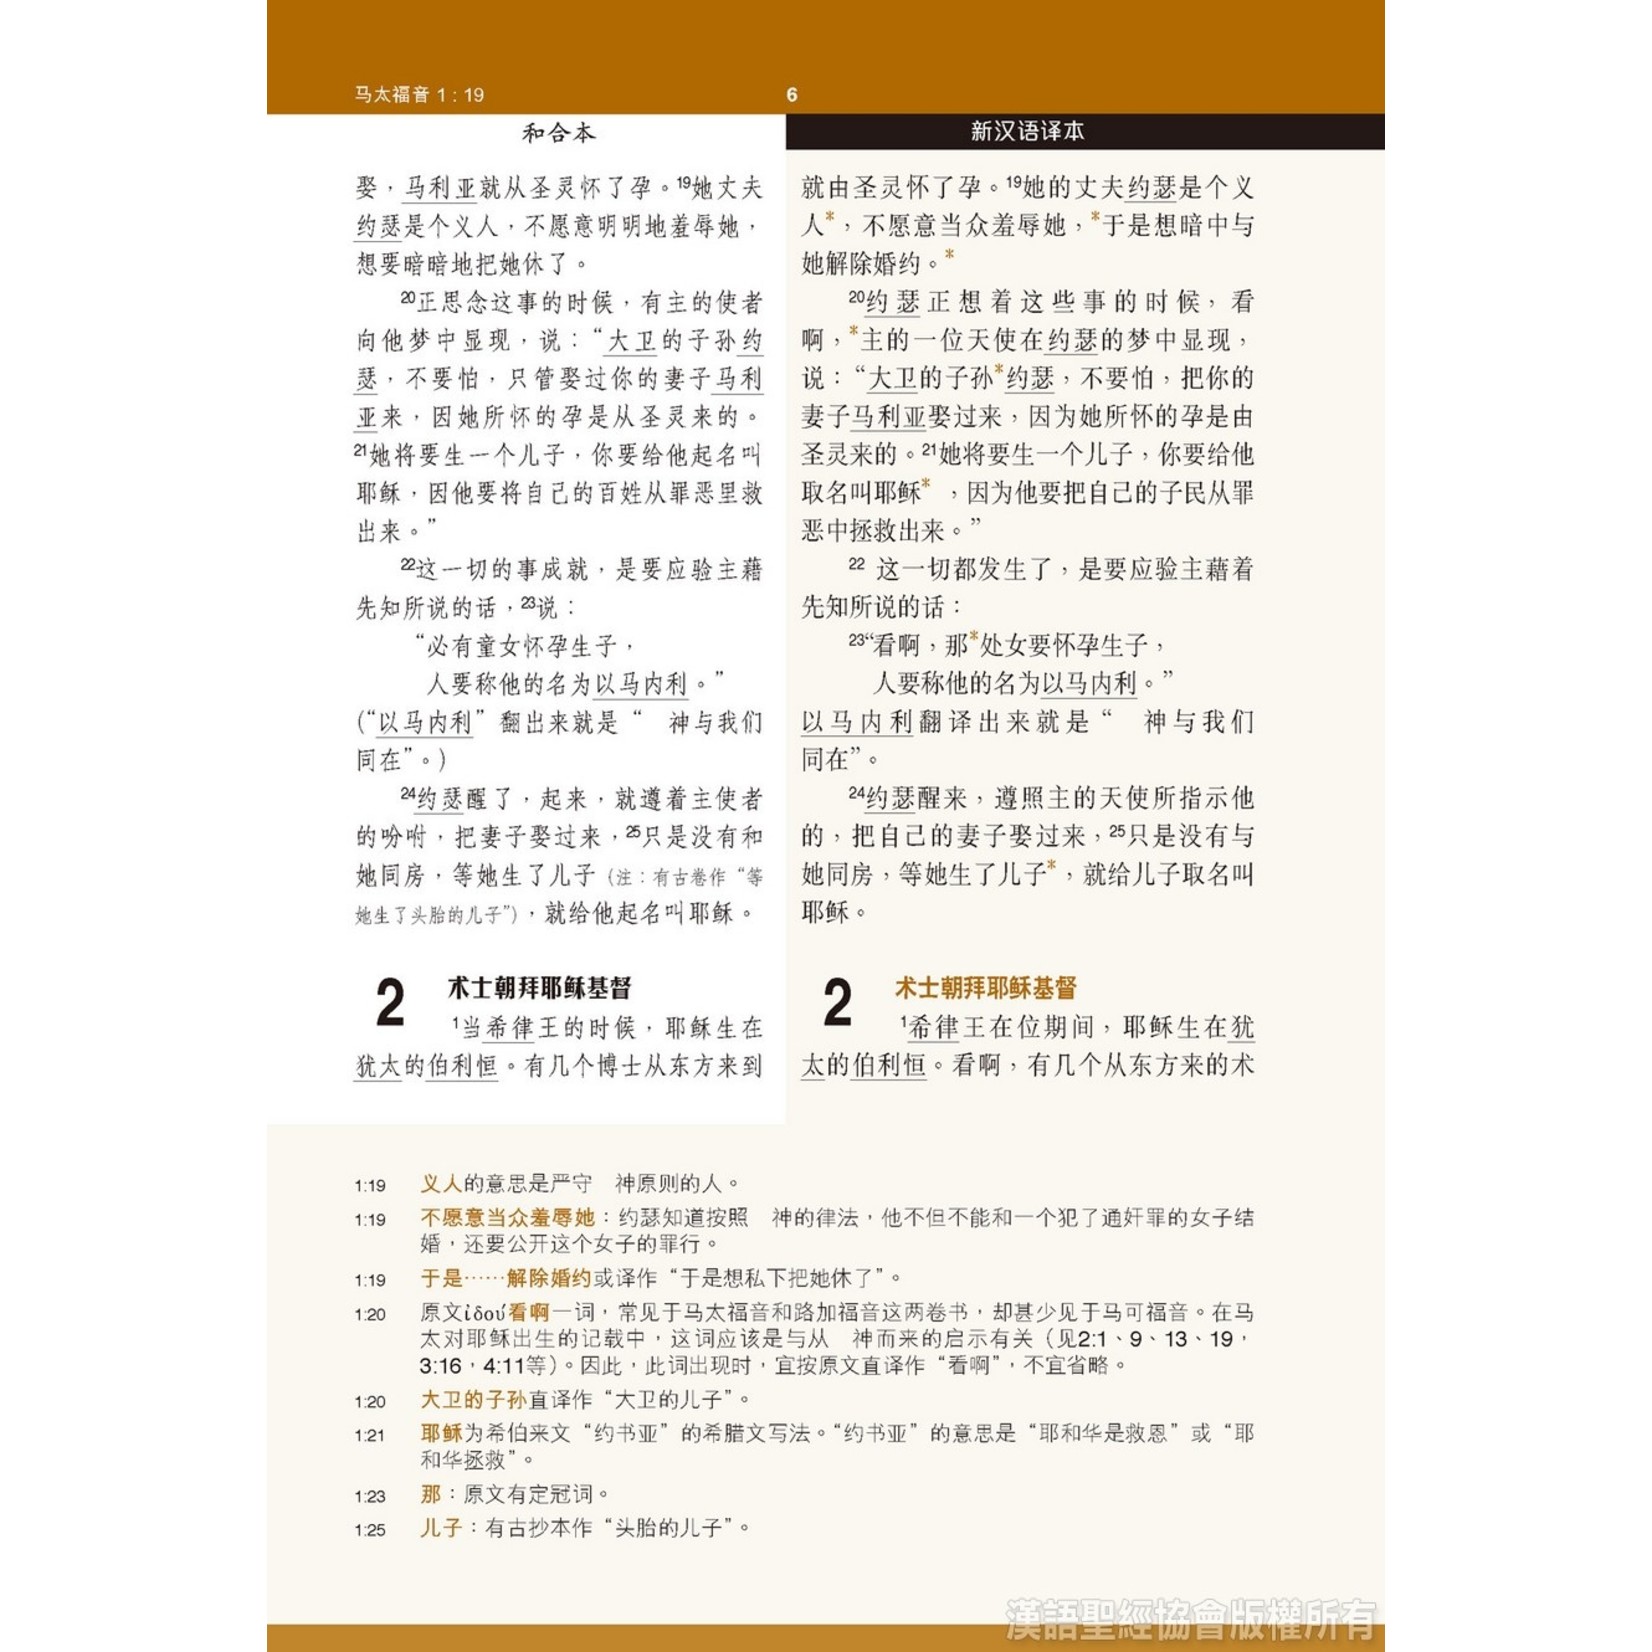 漢語聖經協會 Chinese Bible International 新约全书．注释版．新汉语/和合本．并排版